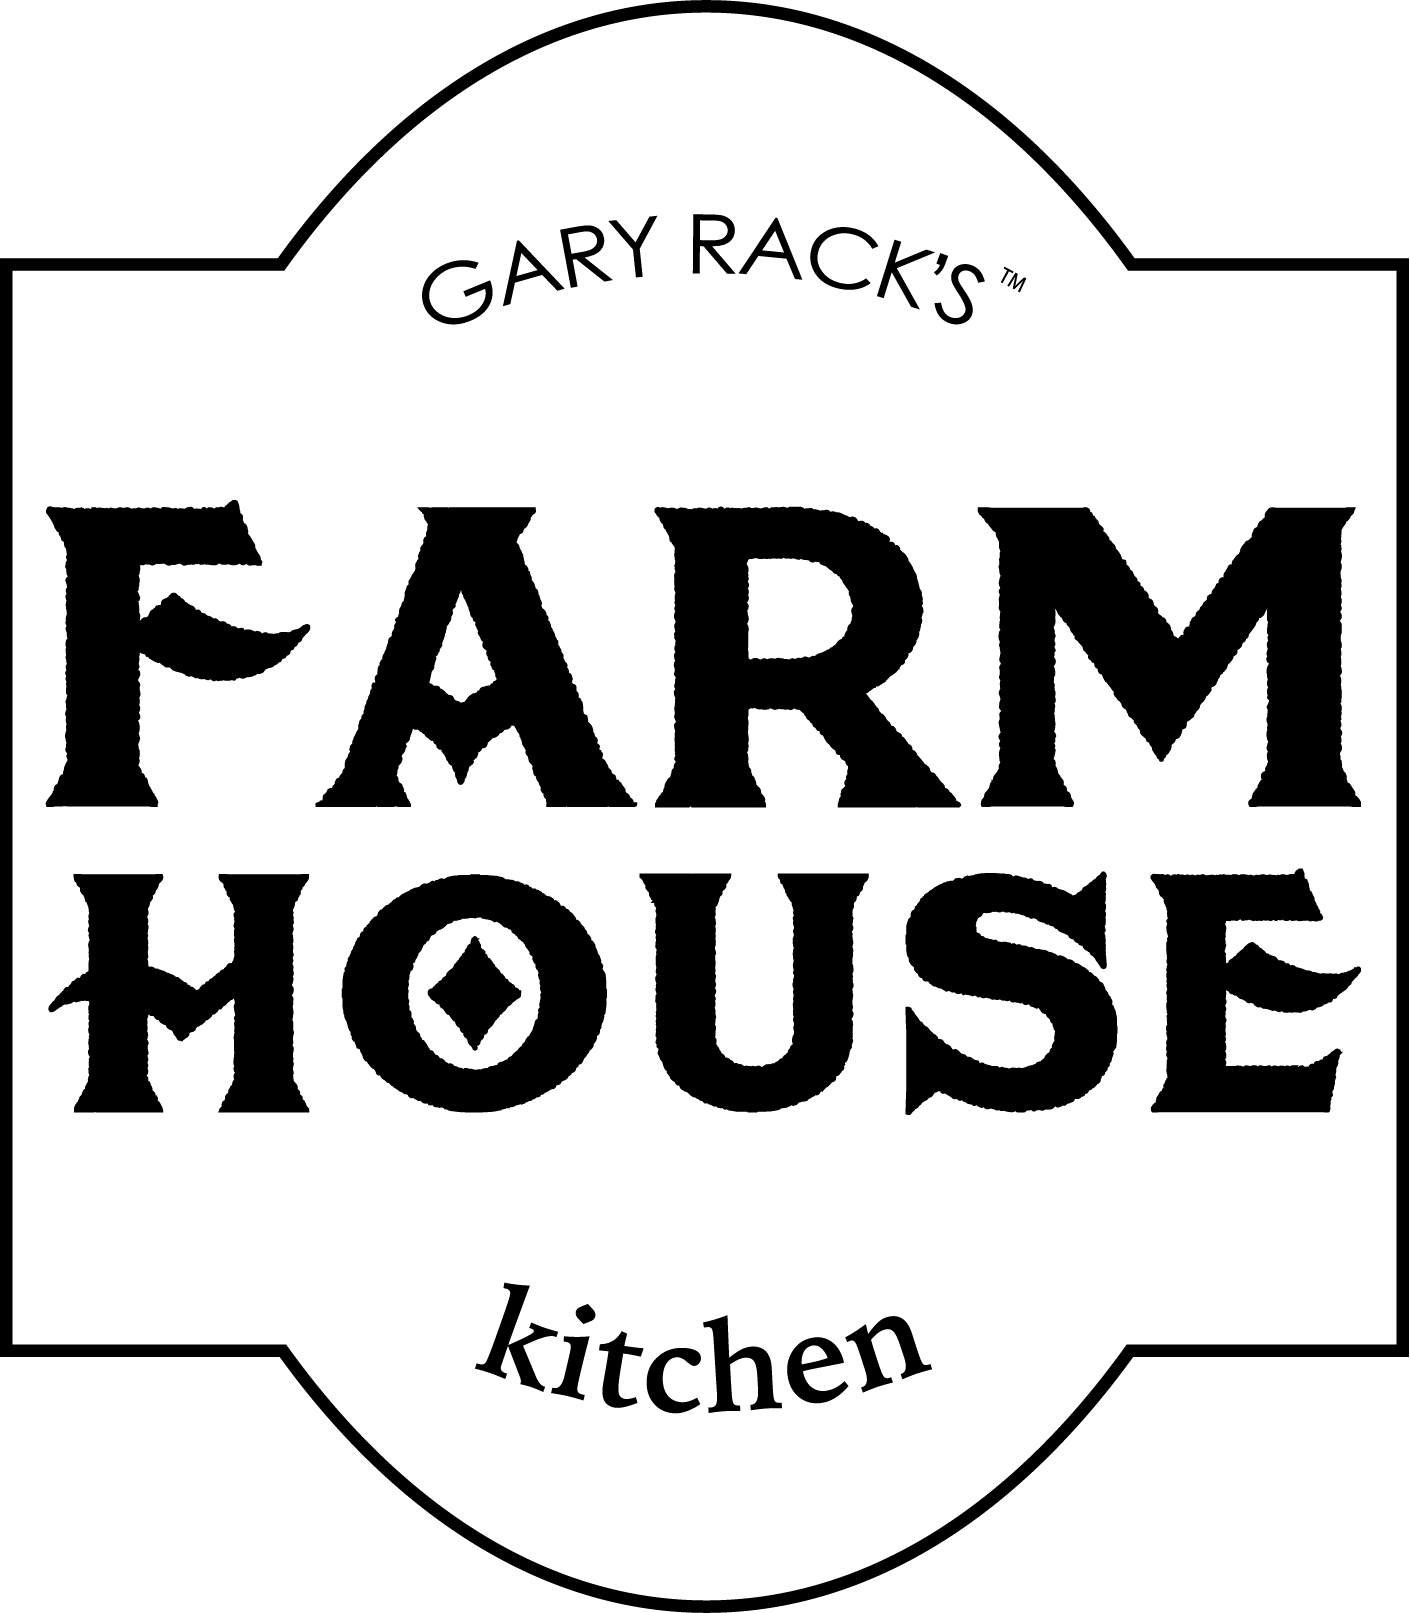 Farmhouse Kitchen - Boca 399 SE Mizner Blvd